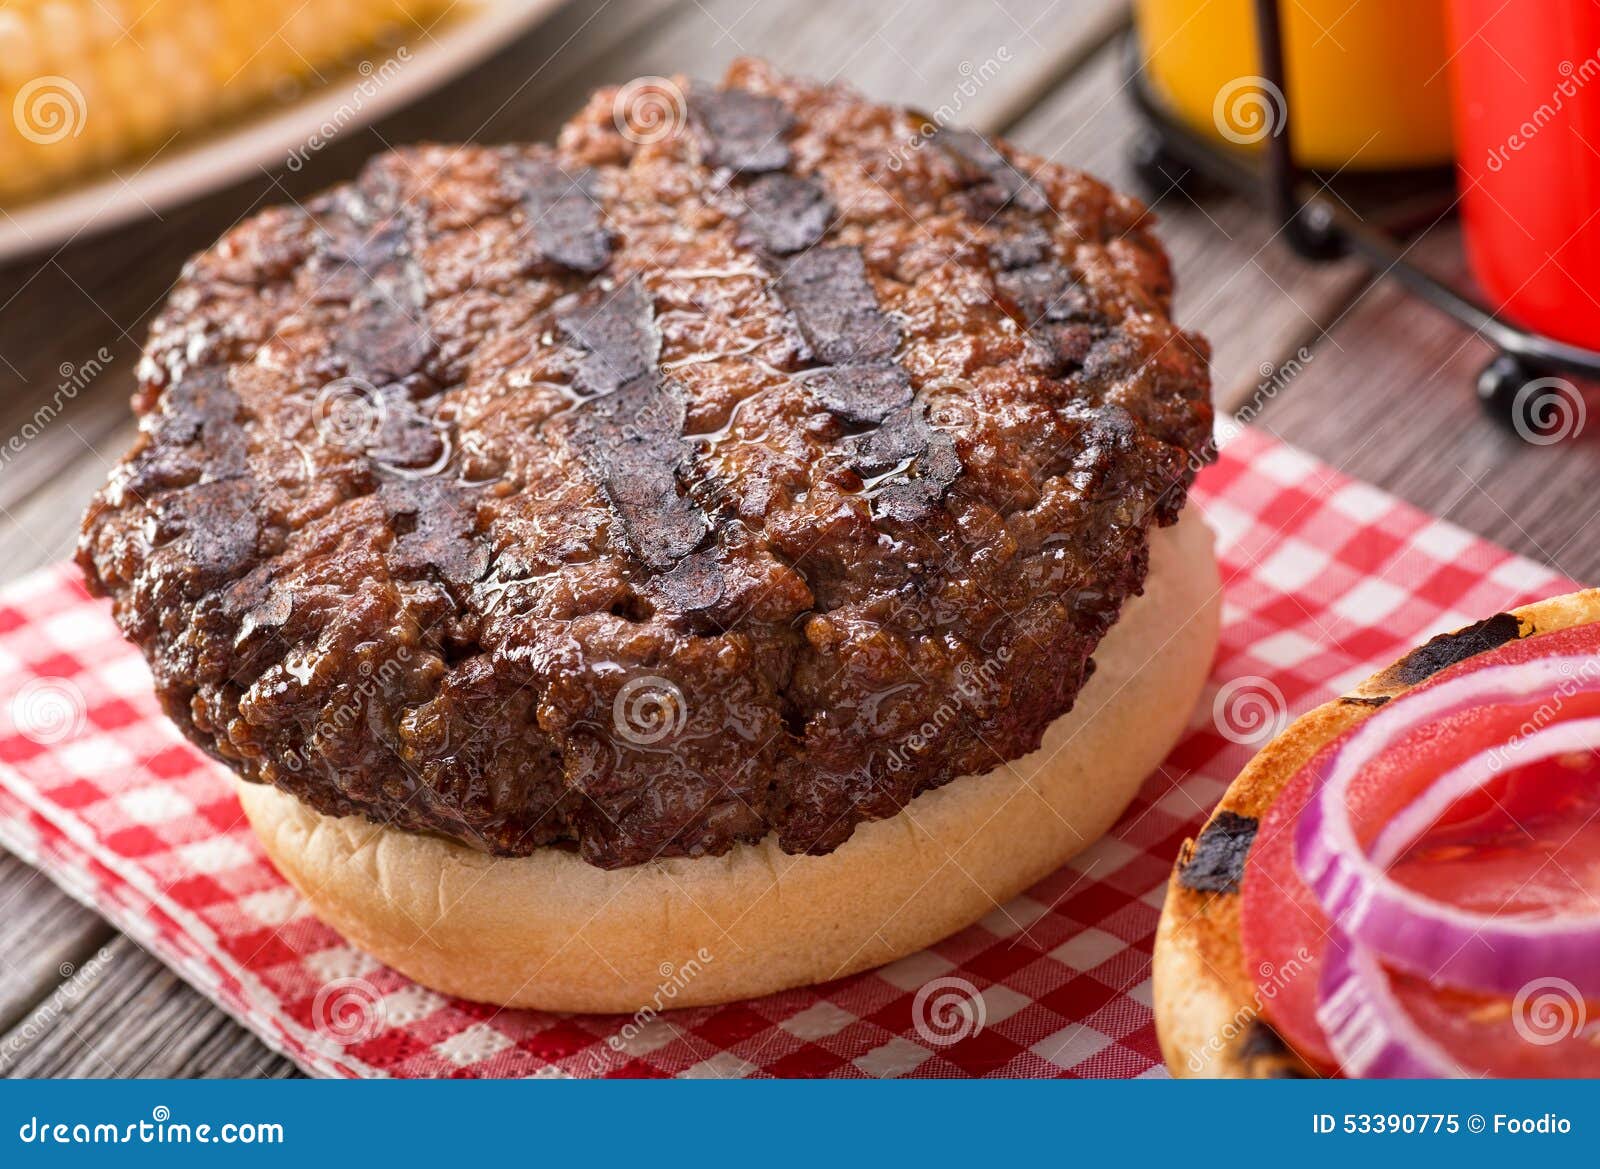 barbecued hamburger